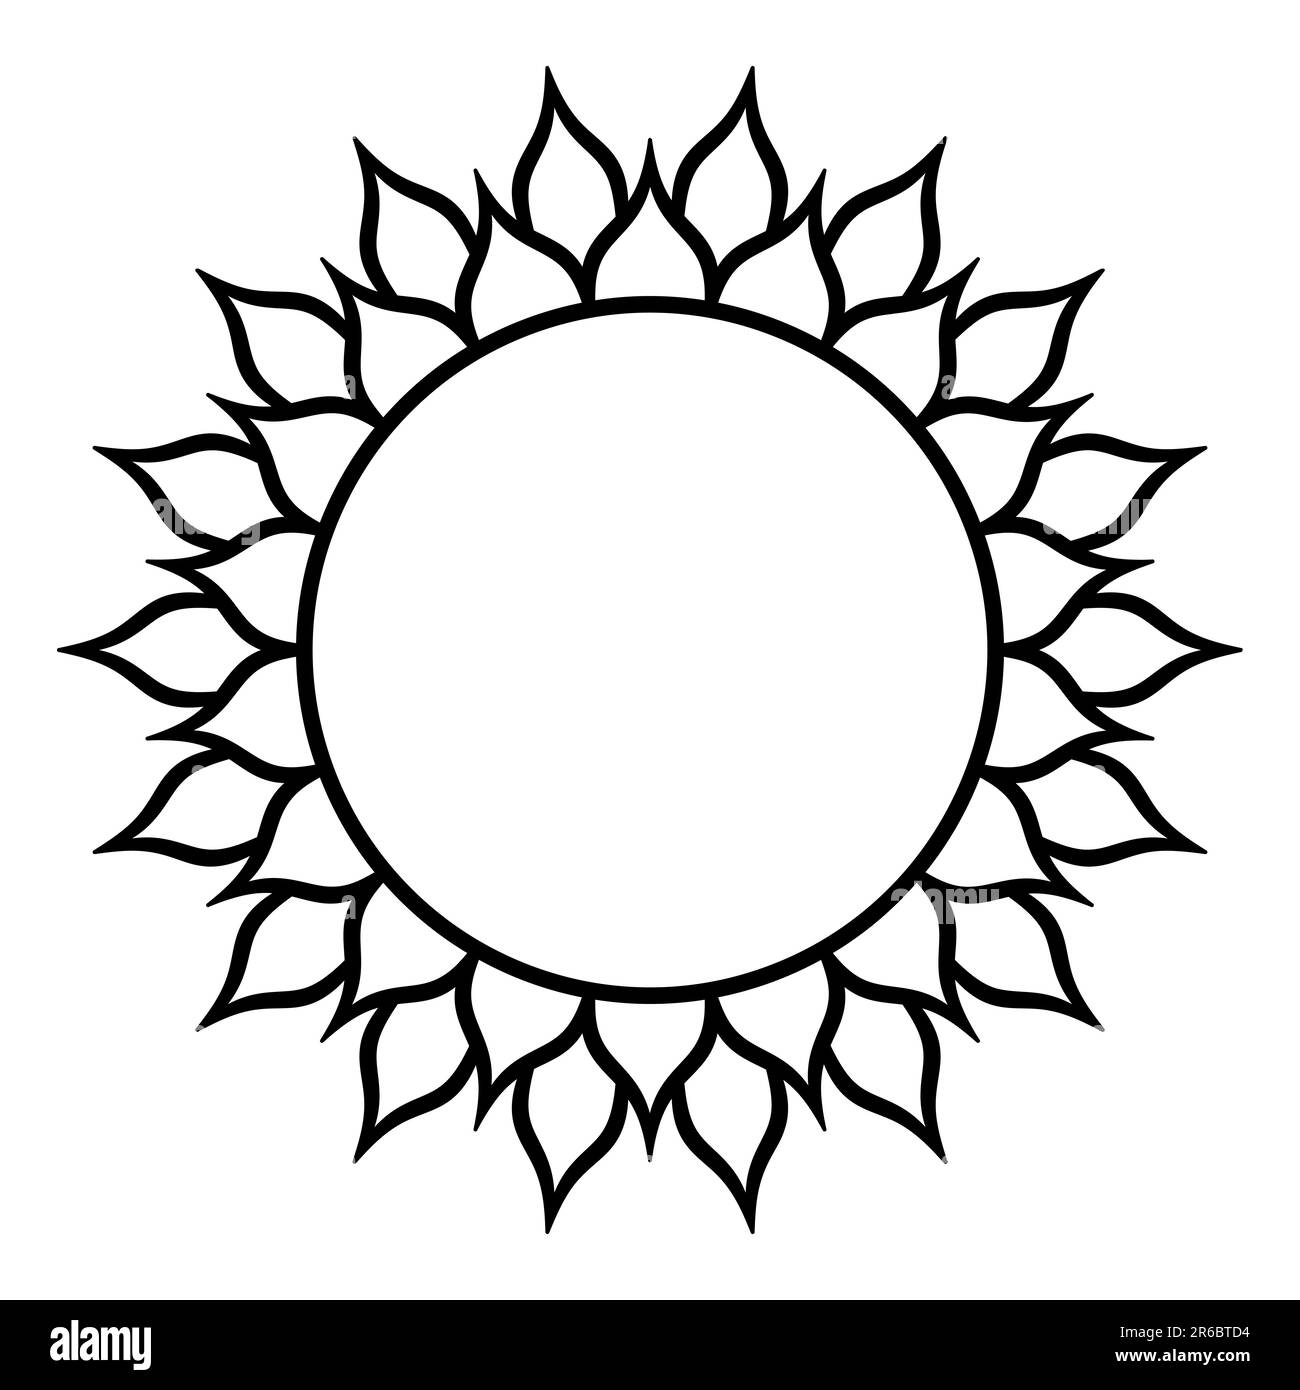 Simbolo di girasole con diciotto petali due volte, o simbolo di sole con trentasei fiamme. Geometria sacra, modellata su una ripetizione circolare di ritaglio. Foto Stock